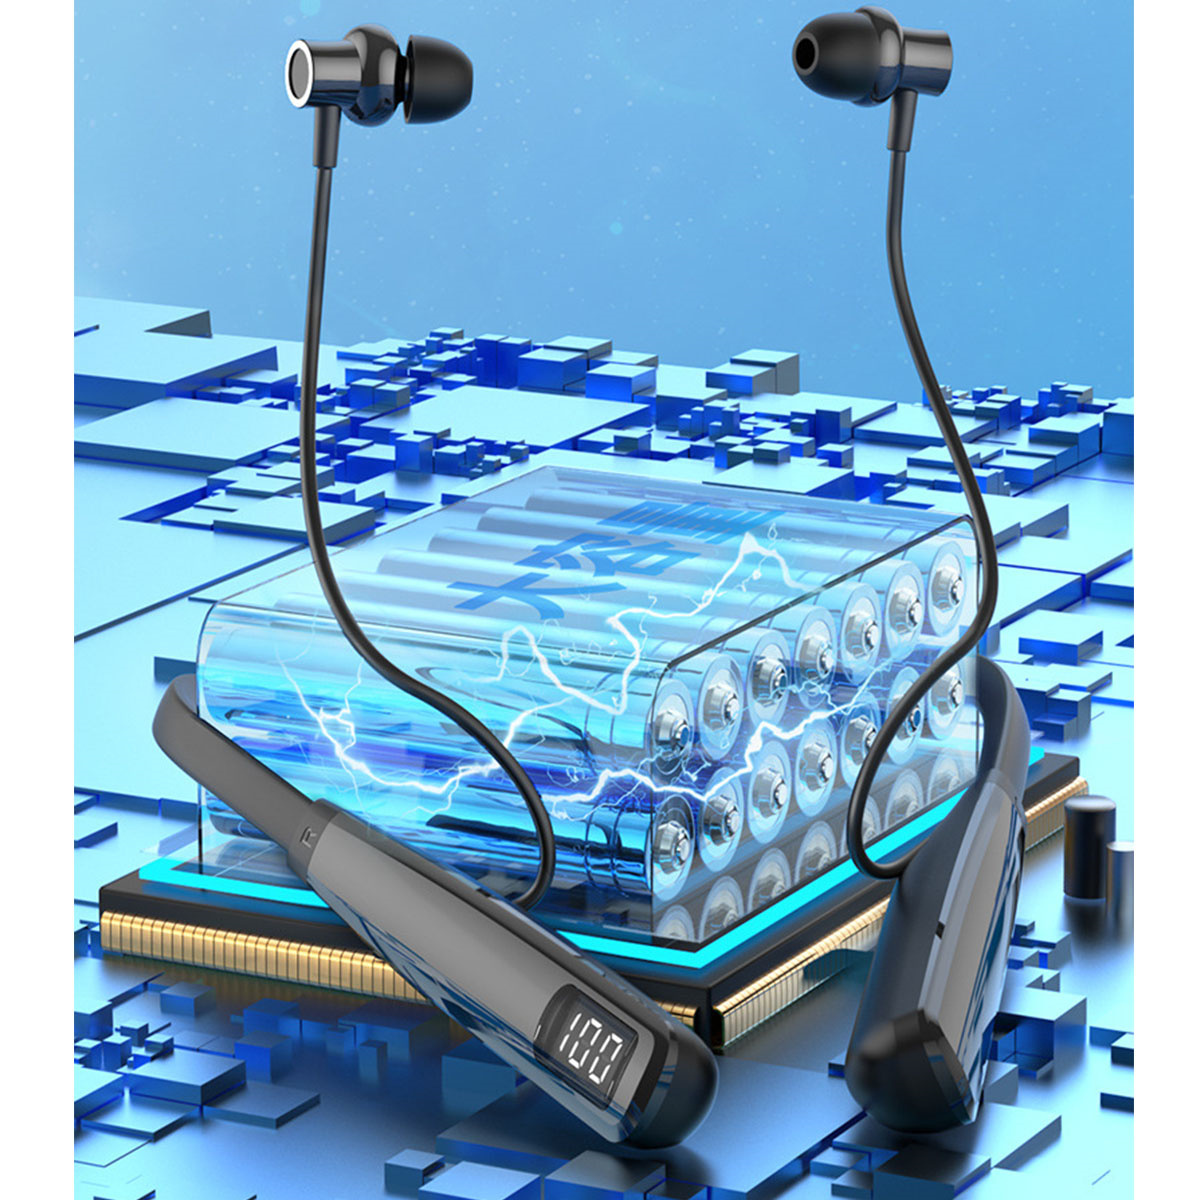 Schmerzen, Weiß Standby, - den In-ear Bluetooth langes Bluetooth-Headset Hals, Bluetooth Kopfhörer ohne Tragen langer um ENBAOXIN